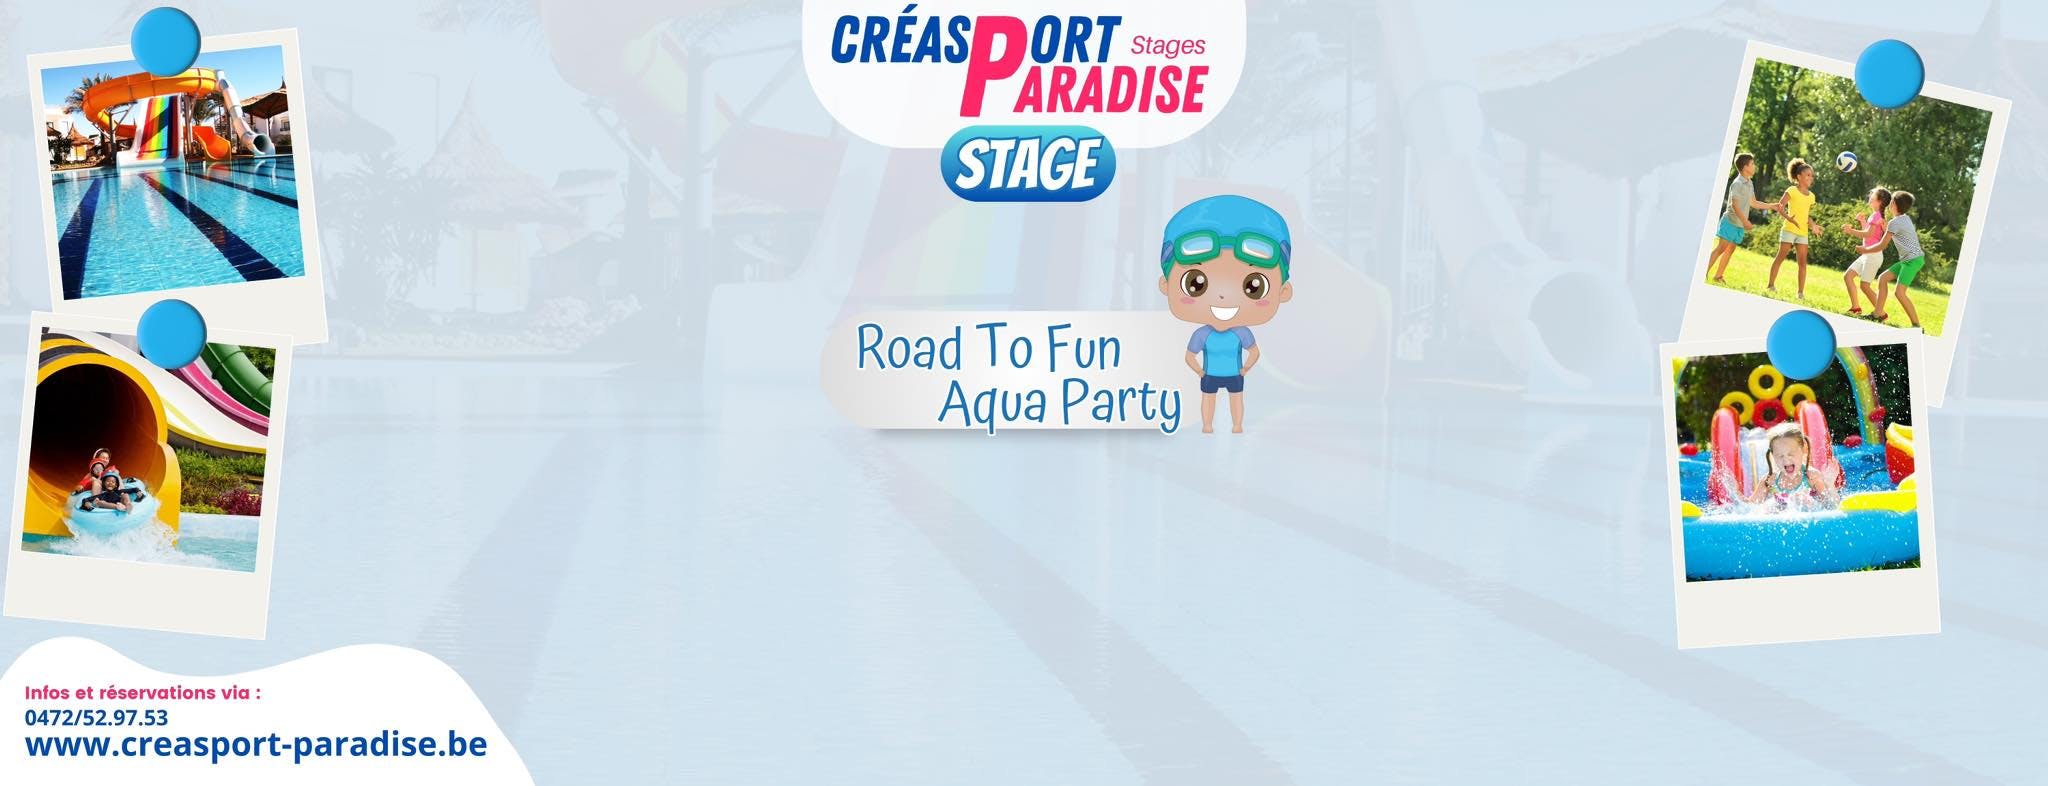 Road to fun - Aqua party